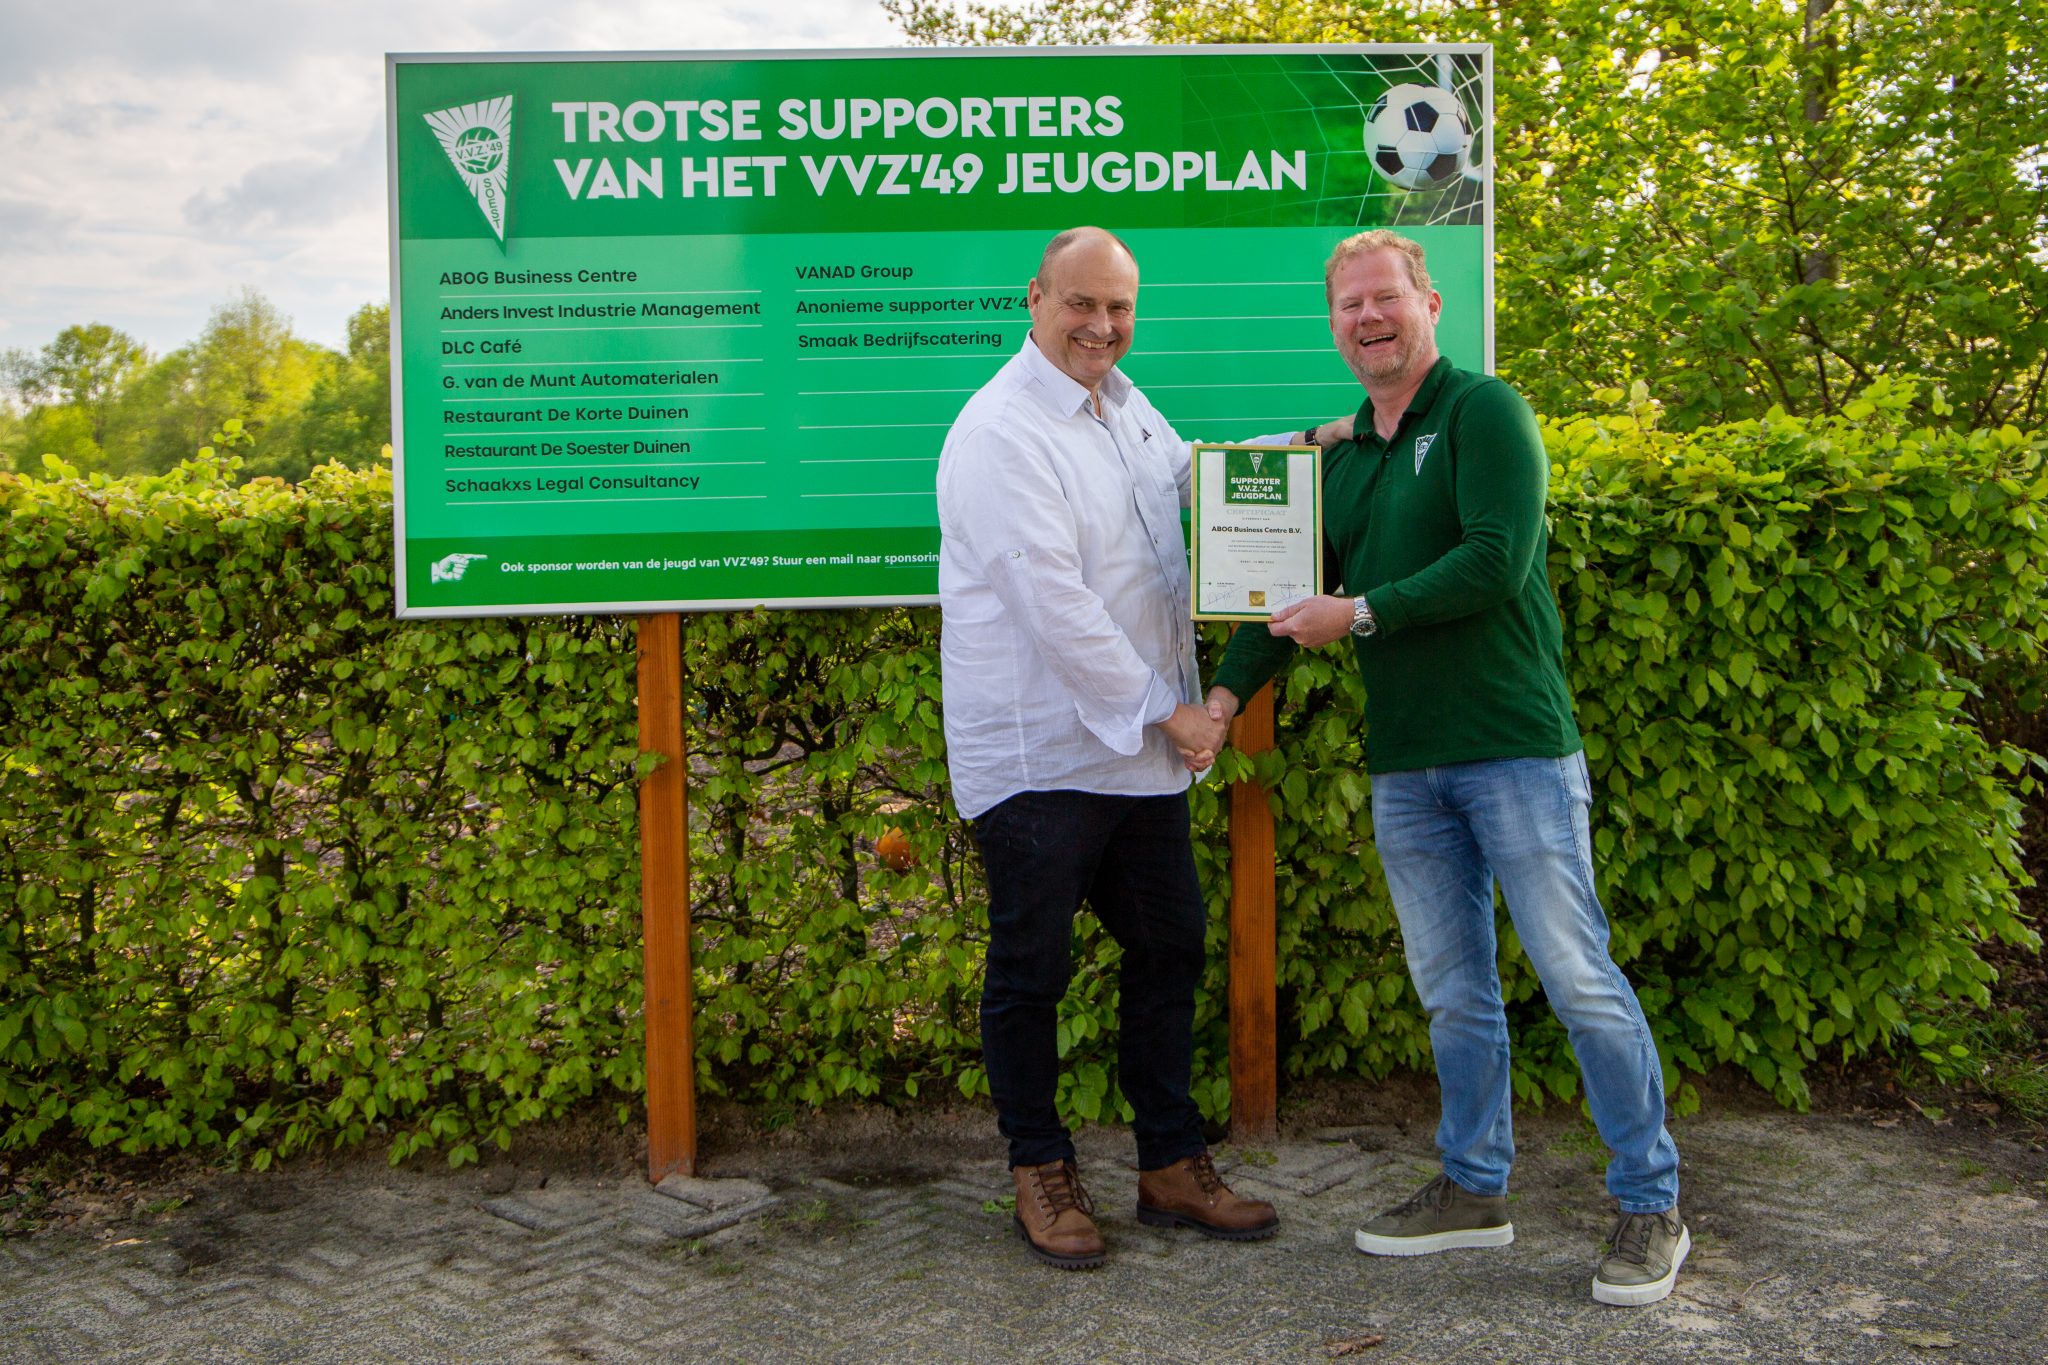 Succesvolle sponsorborrel met FC Utrecht iconen Frans van Seumeren en Gert Kruys.